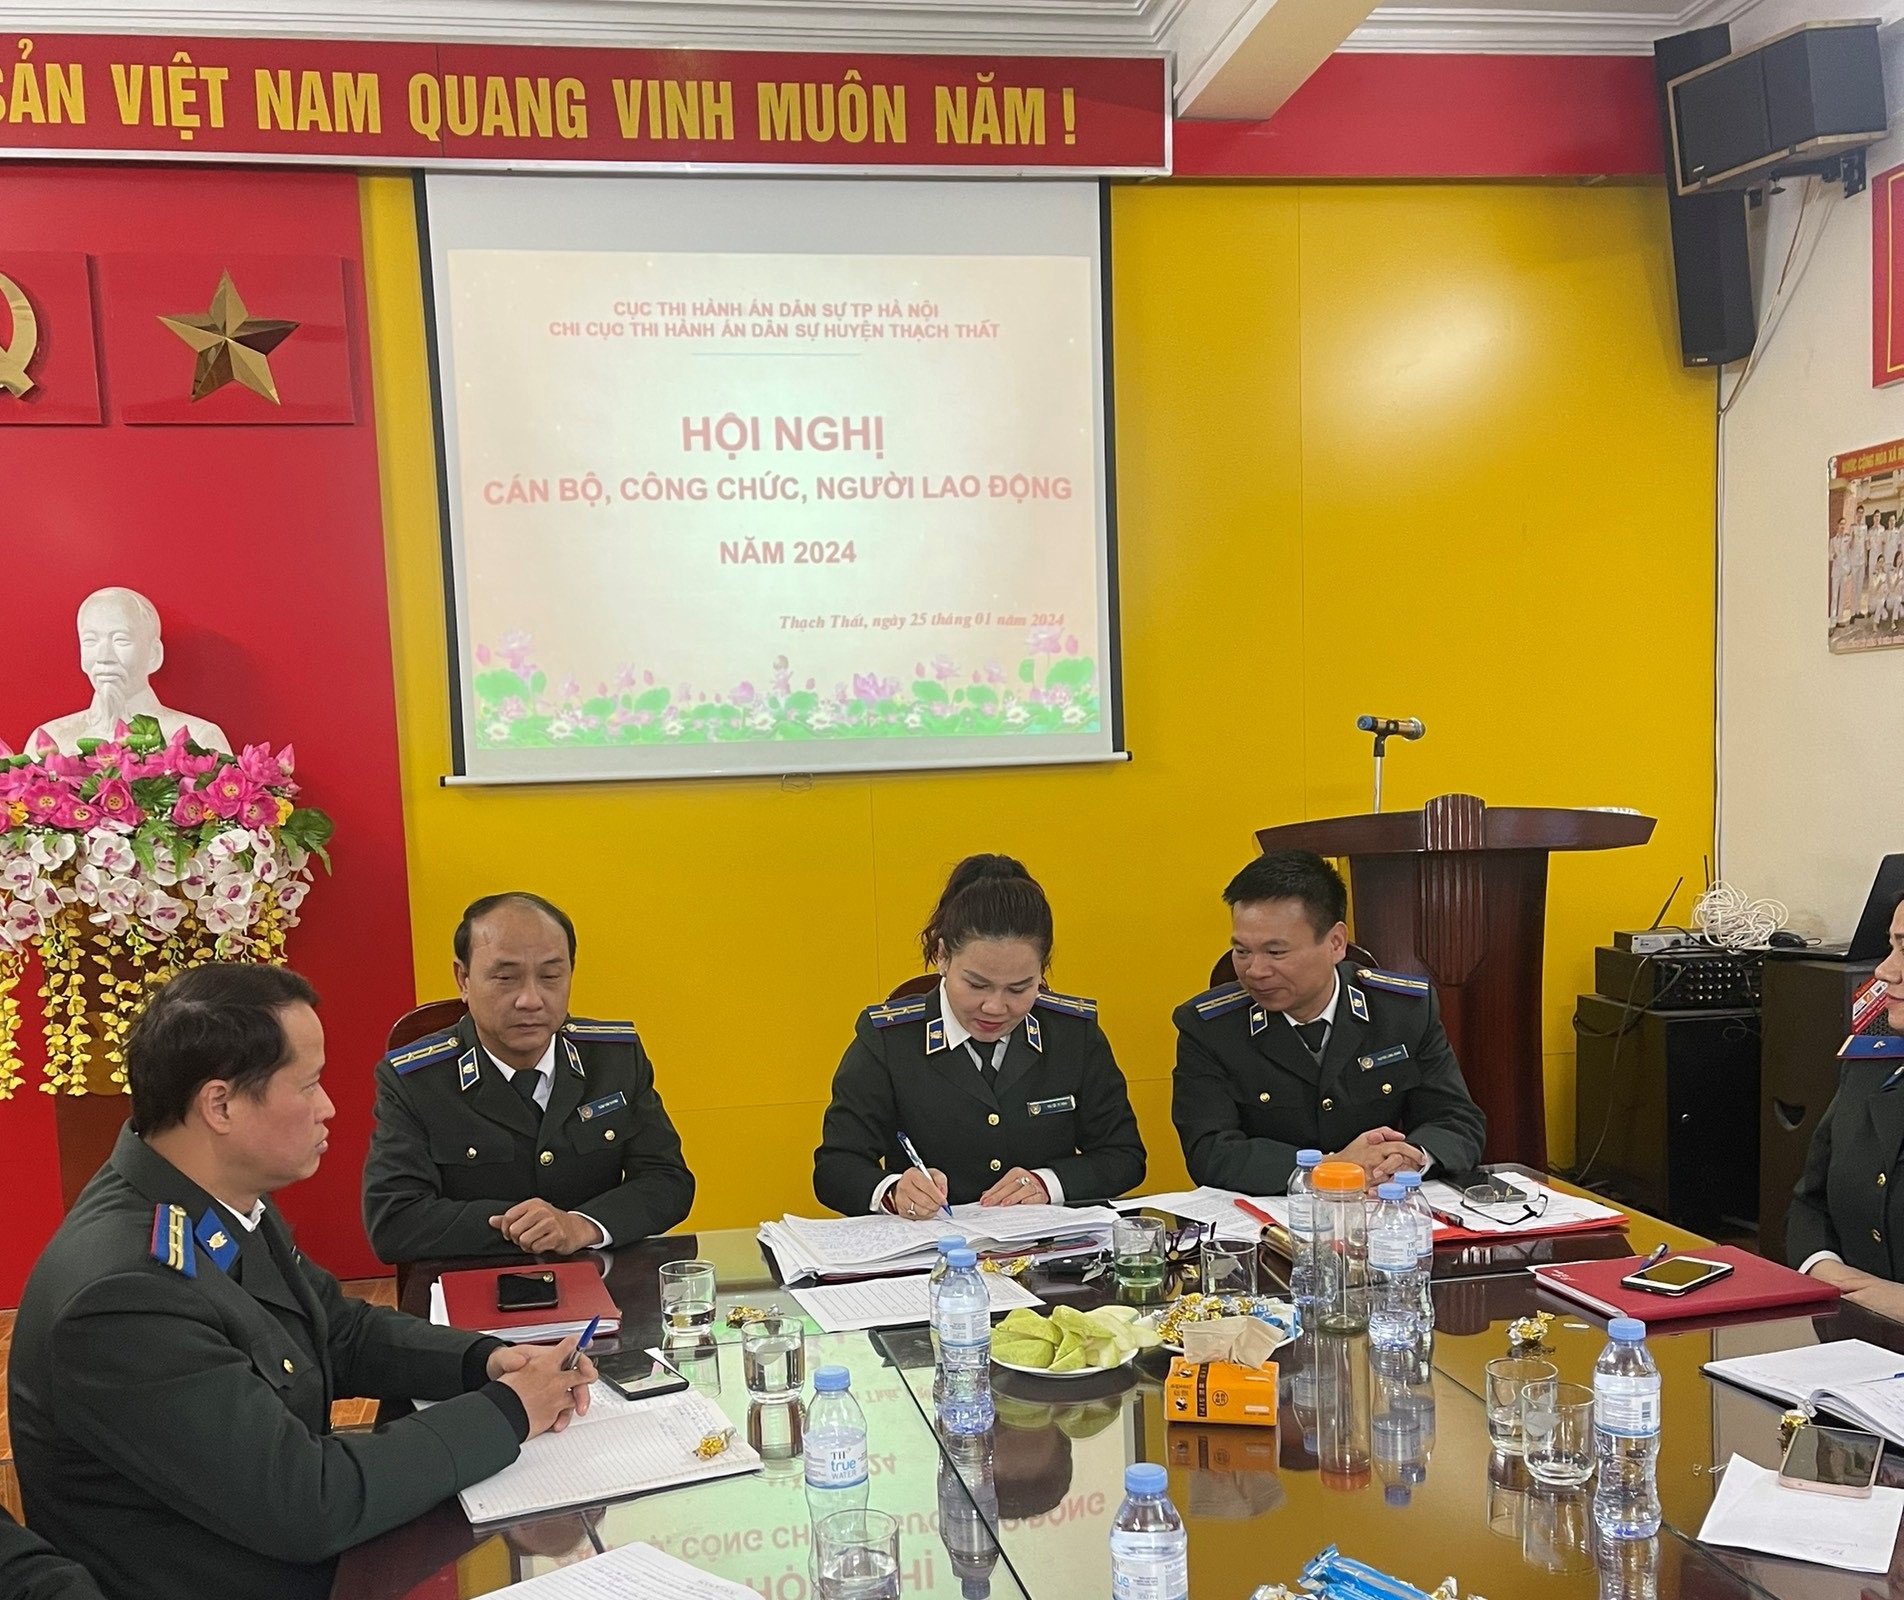 Sáng ngày 25/01, Thủ trưởng cơ quan phối hợp với Ban chấp hành Công đoàn Chi cục Thi hành án dân sự huyện Thạch Thất tổ chức Hội nghị cán bộ, công chức, người lao động năm 2024.